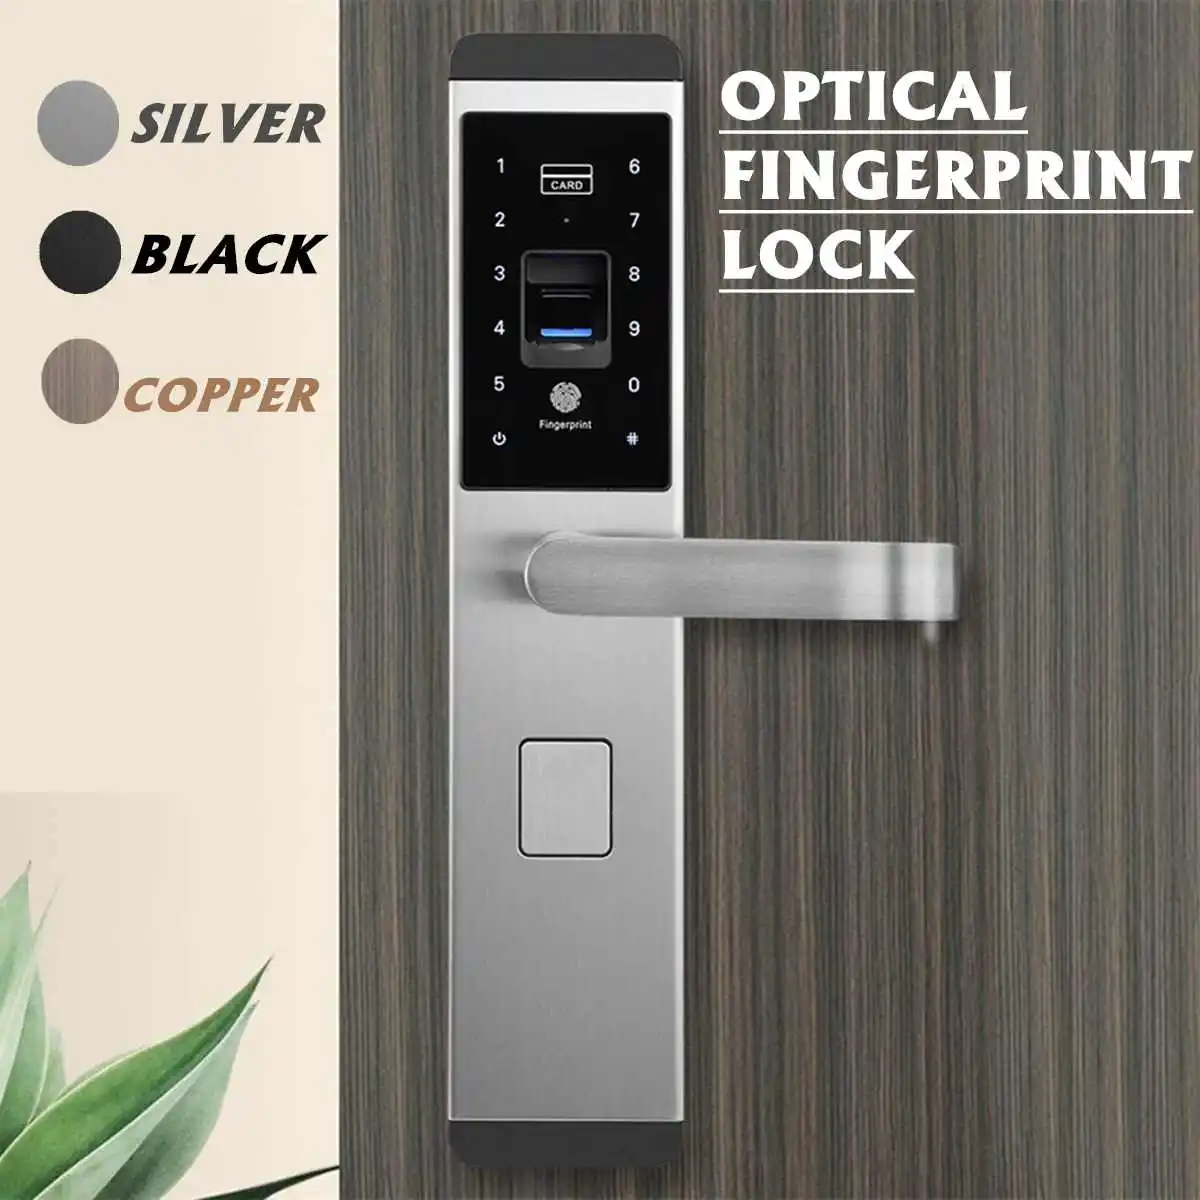 5 способ Универсальный отпечаток пальца умный дверной замок Пароль сенсорный без ключа 2 ключа+ 4 карты Электрический замок контроль доступа домашний отель 3 цвета